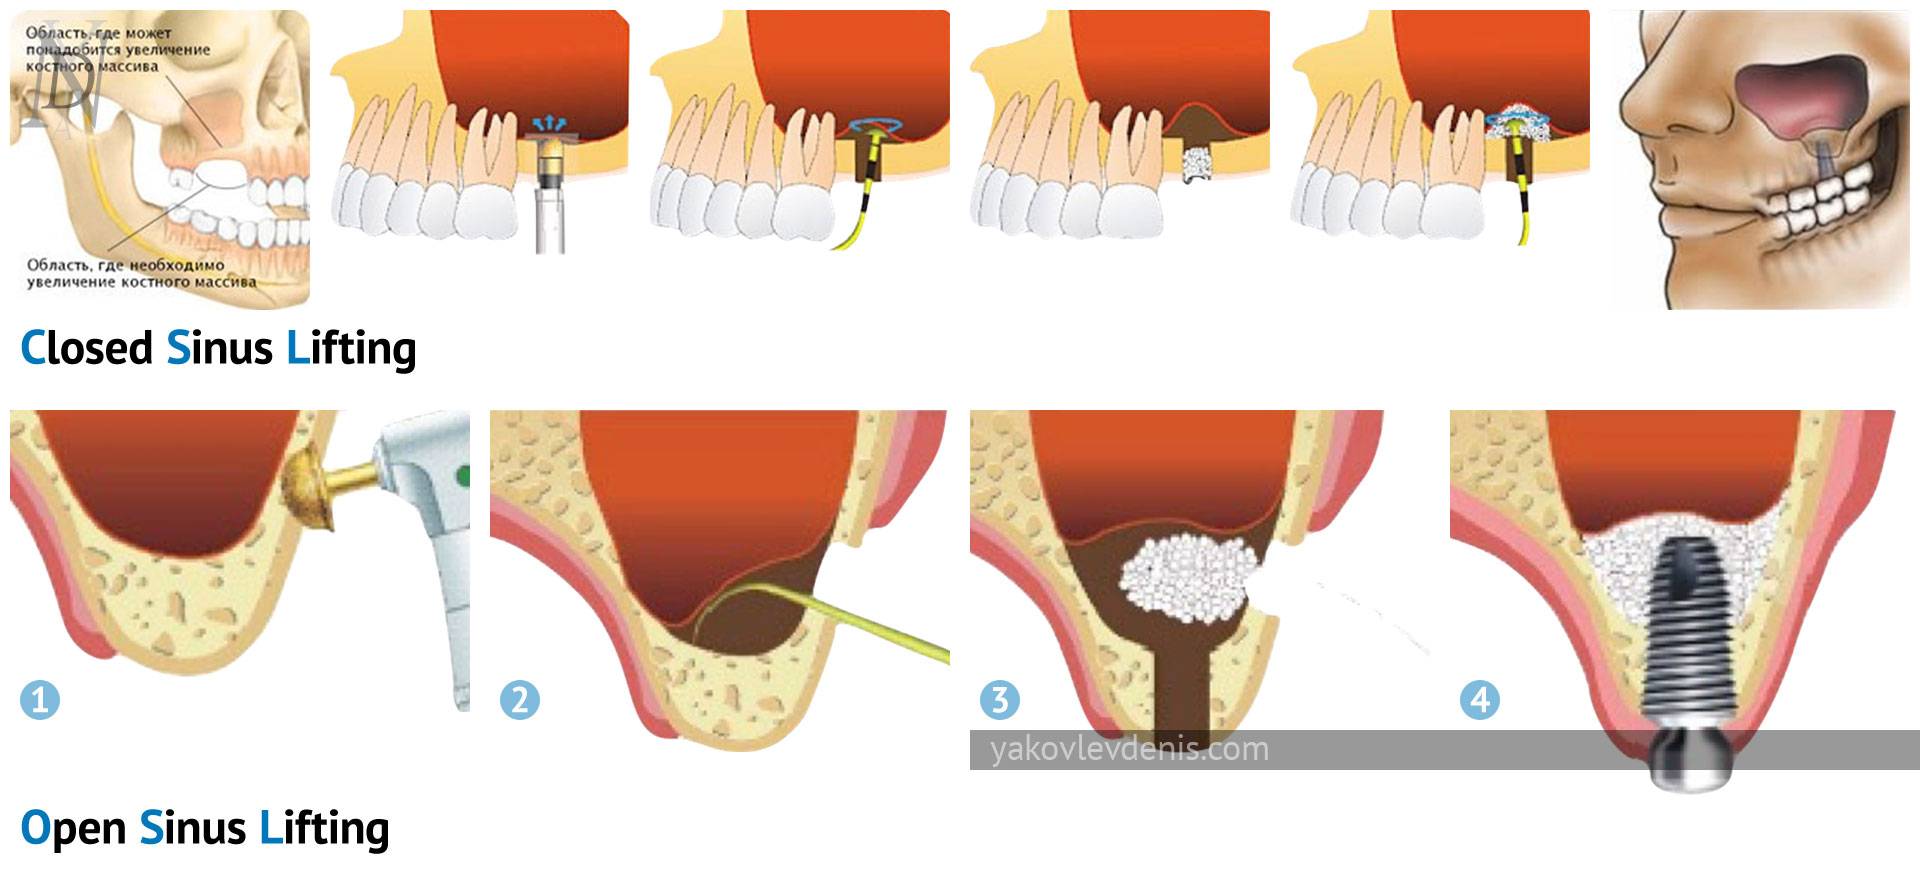 Синус-лифтинг - что это такое? использование при имплантации зубов, цена и отзывы